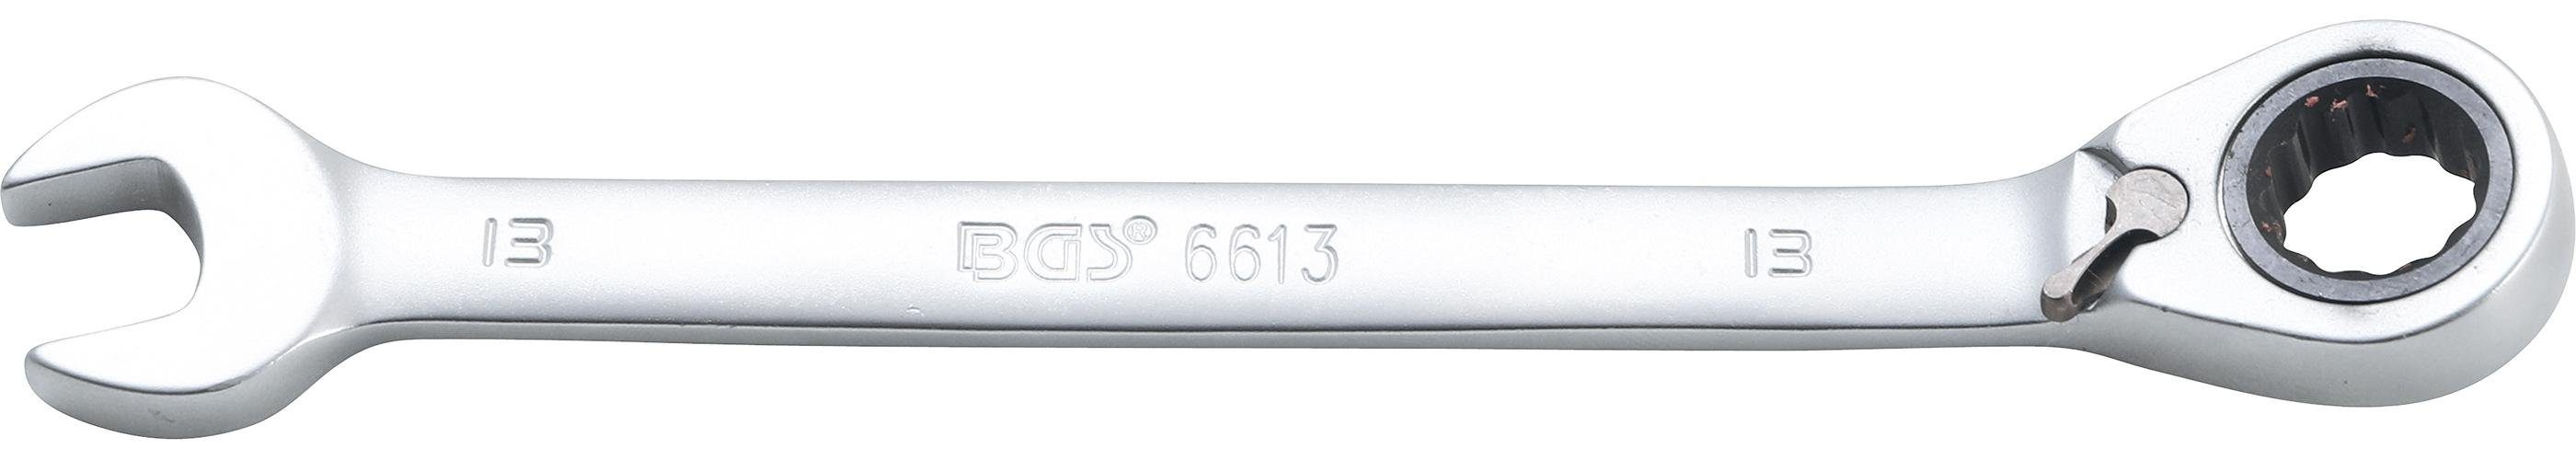 BGS technic Stecknuss Ratschenring-Maulschlüssel, umschaltbar, SW 13 mm | Steckschlüssel